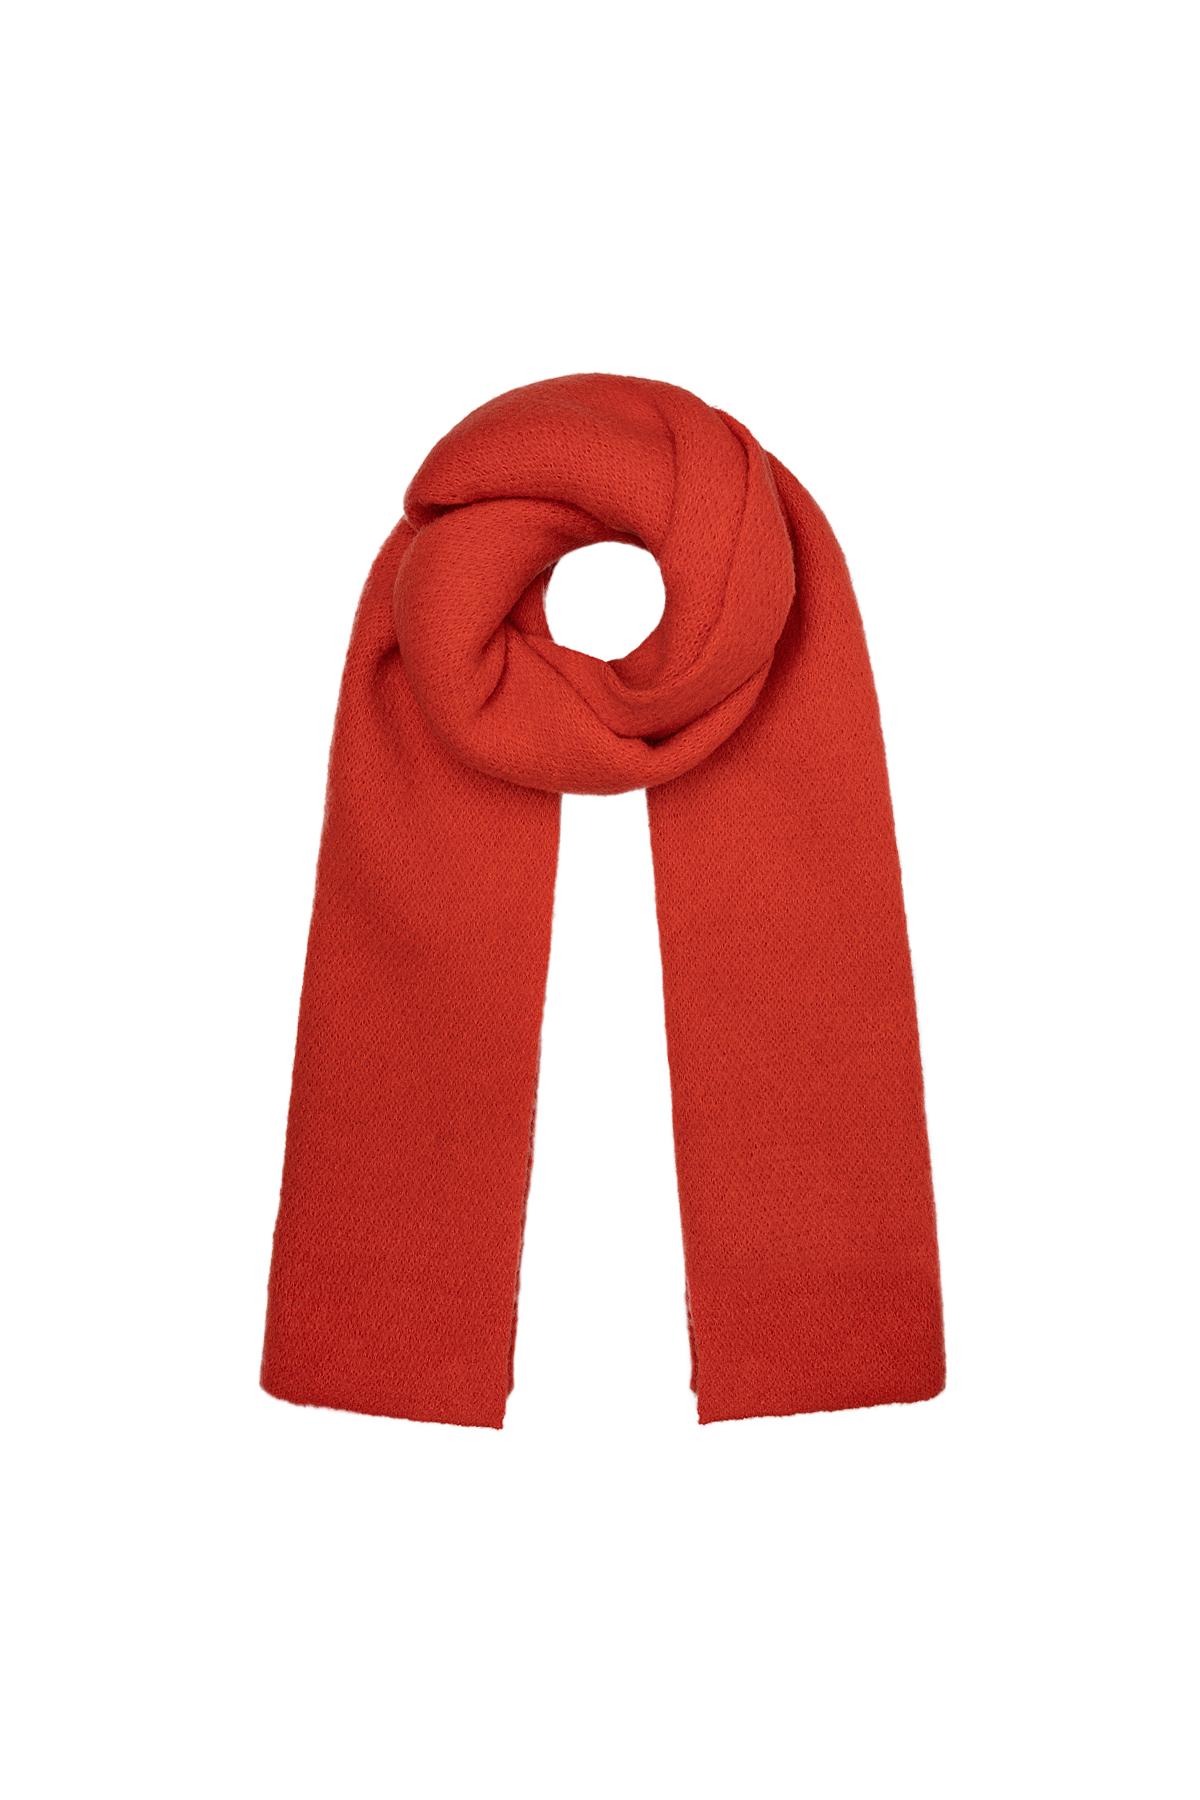 Morbida sciarpa invernale in tinta unita rossa Red Polyester 